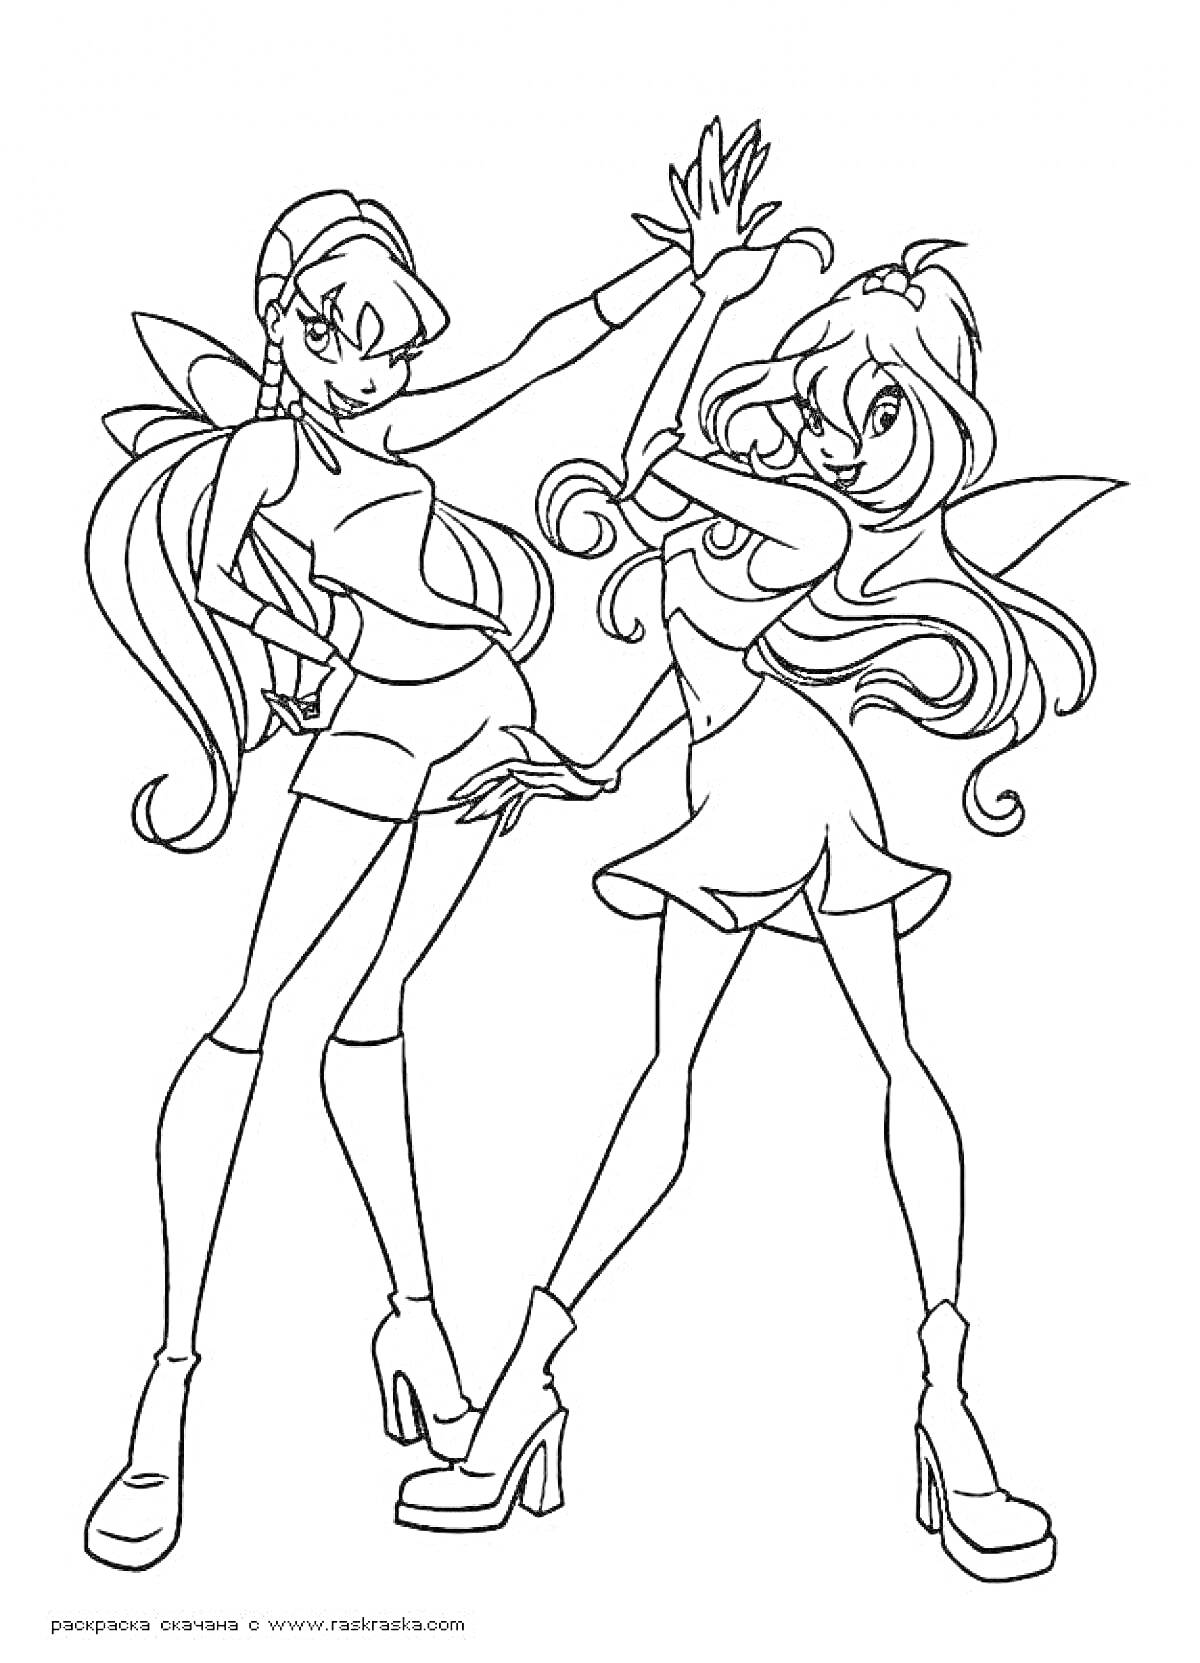 две девушки-феи, стоящие спина к спине, с большими крыльями и в модной короткой одежде